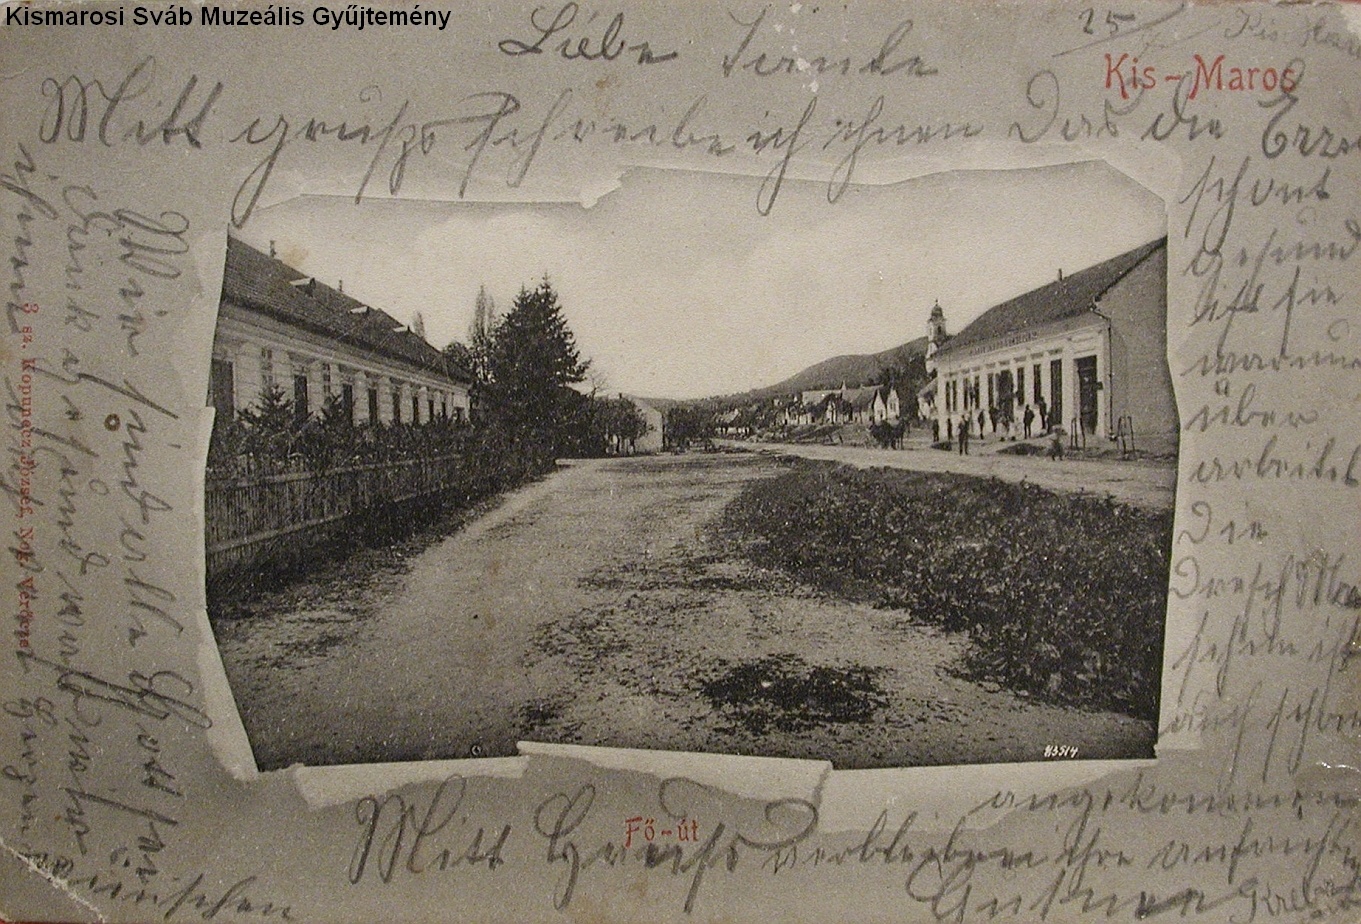 A régi Kismaros Fő utcája (1900 körül) (Kismarosi Sváb Muzeális Gyűjtemény RR-F)